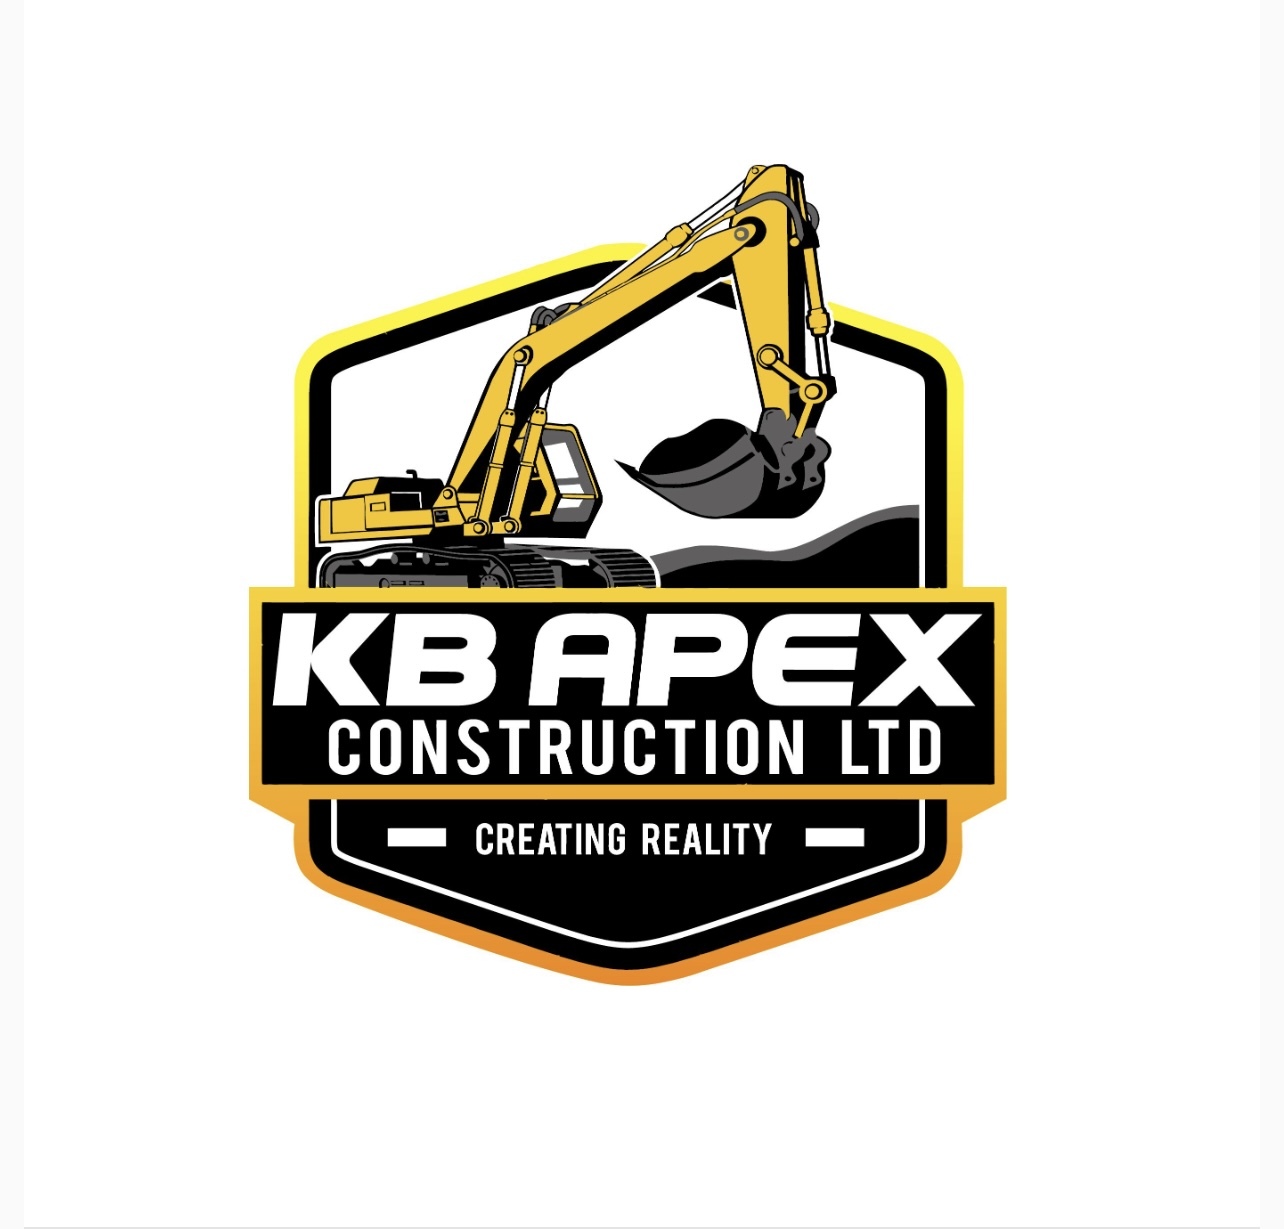 KB Apex Constructions Ltd's logo